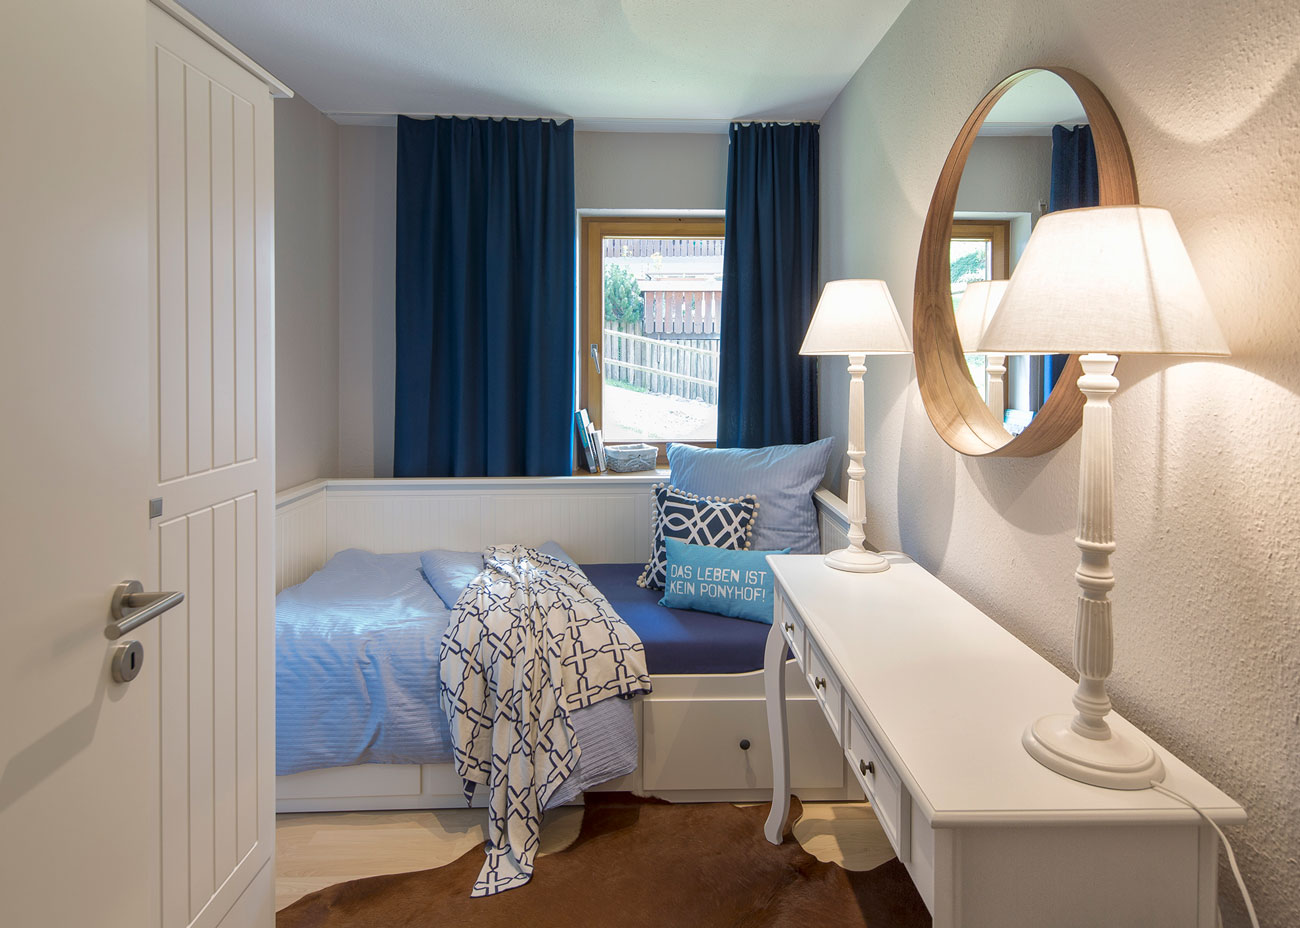 Wohnung gemütlich einrichten schlafzimmer blau weiss taupe bett vorhang blau tischleuchten konsole